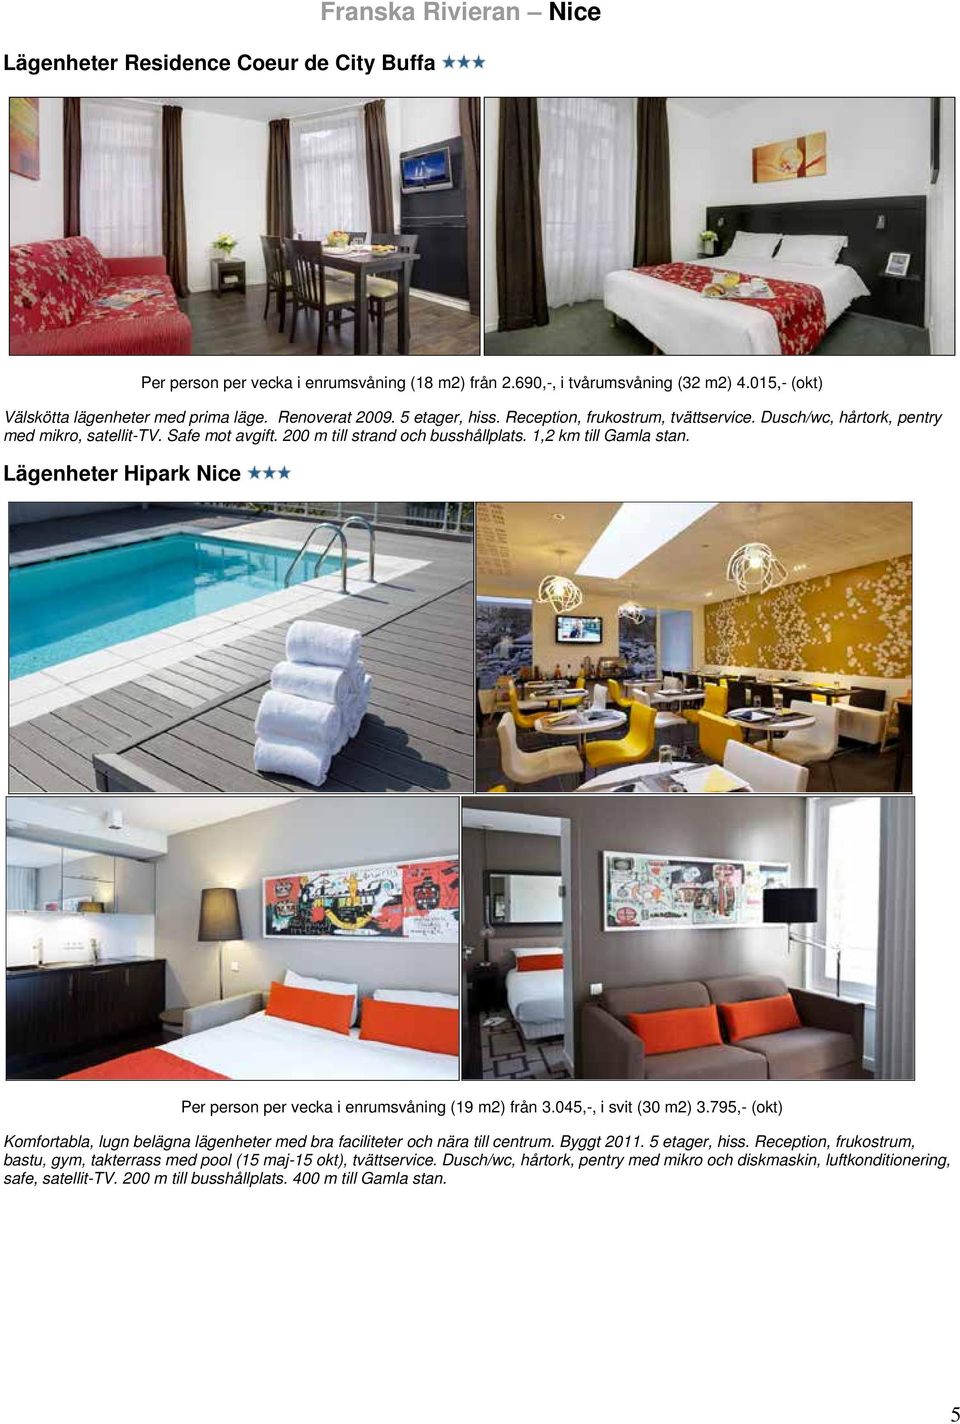 Lägenheter Hipark Nice Per person per vecka i enrumsvåning (19 m2) från 3.045,-, i svit (30 m2) 3.795,- (okt) Komfortabla, lugn belägna lägenheter med bra faciliteter och nära till centrum.